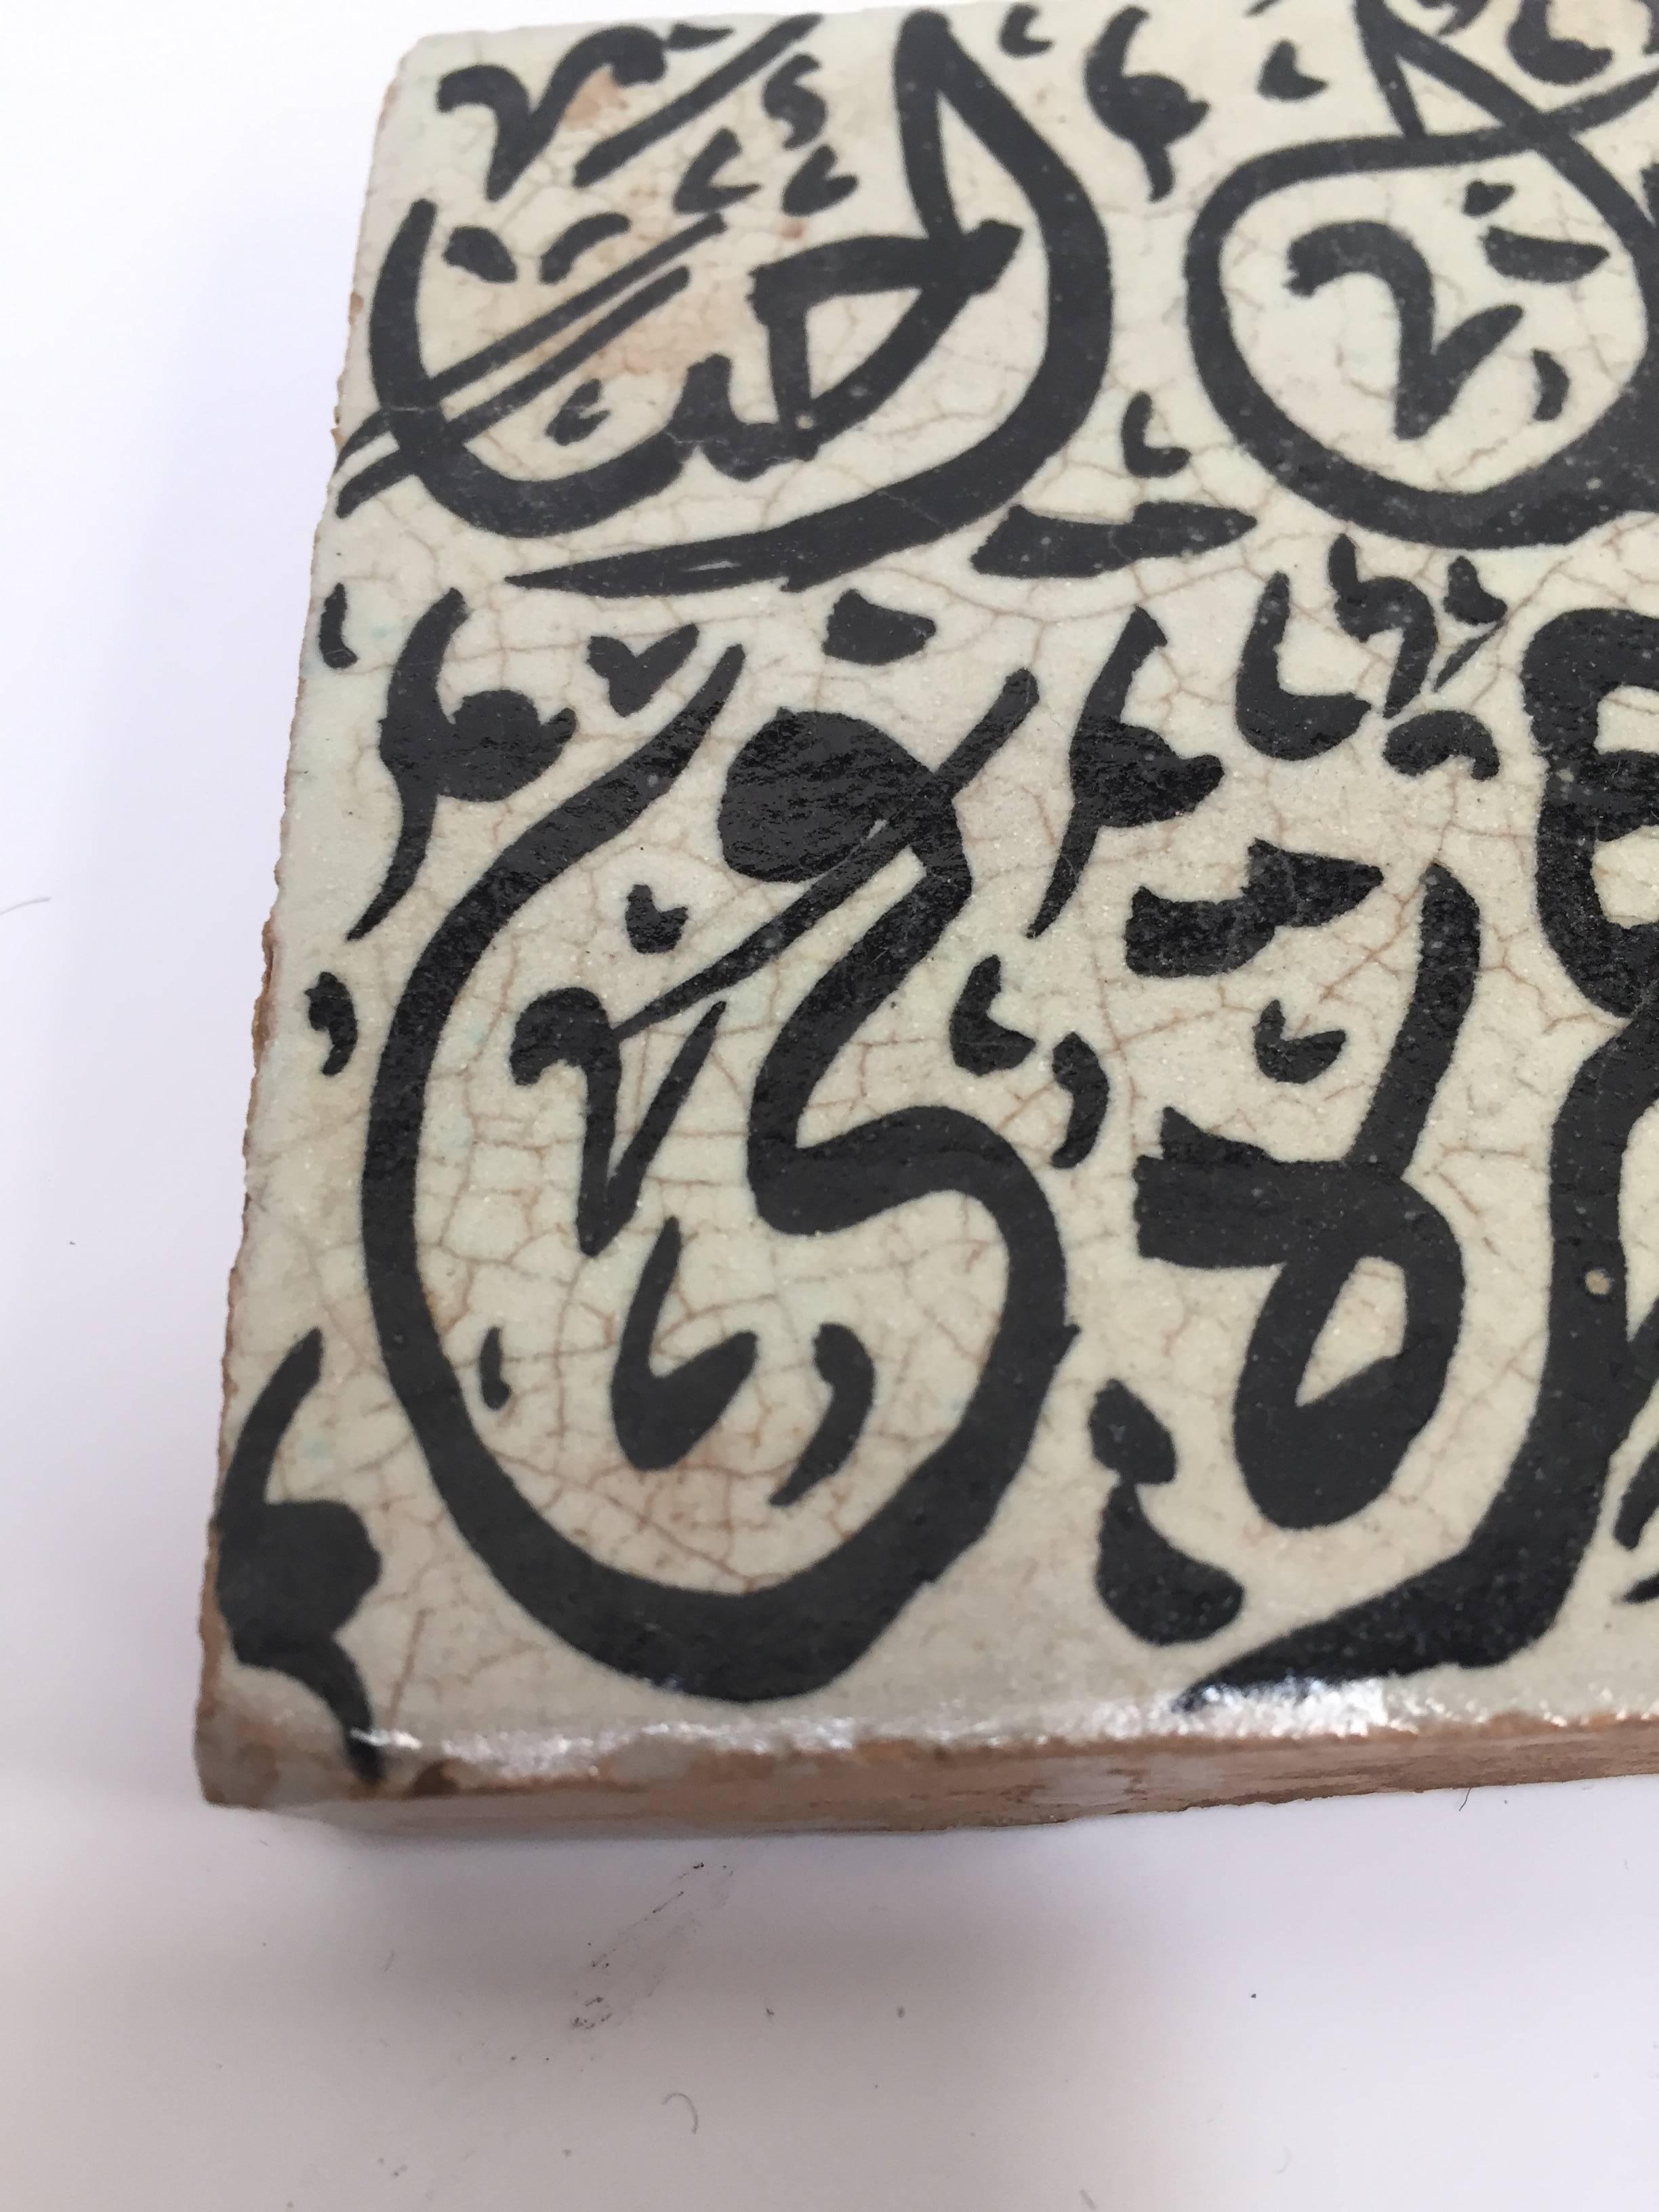 Moorish Moroccan Tile with Arabic Writing in Black